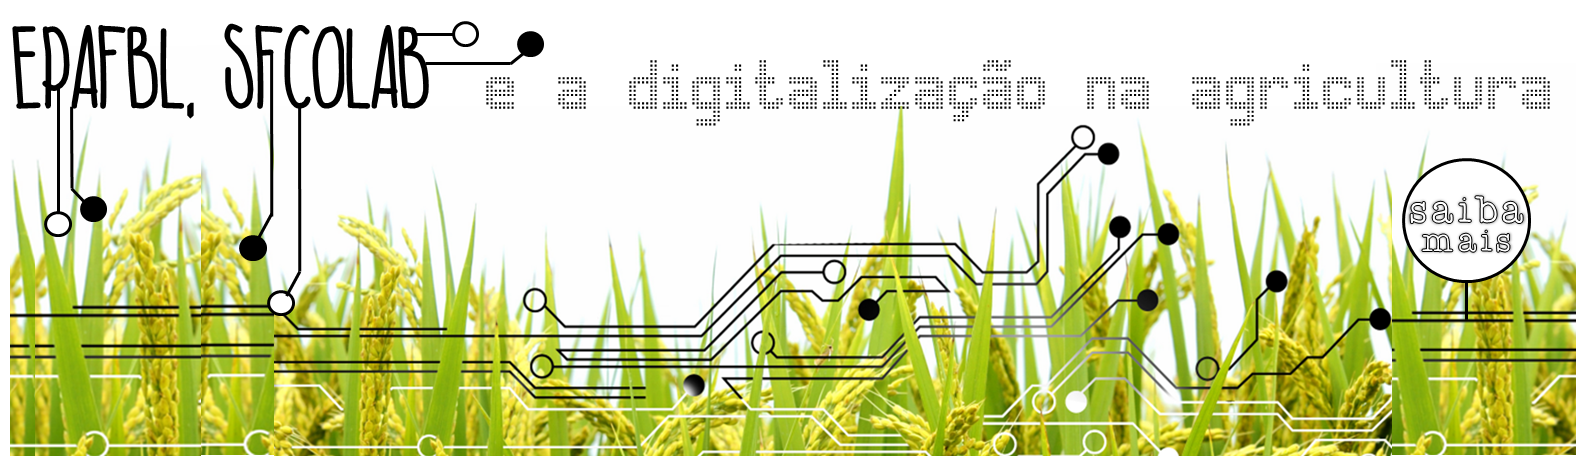 EPAFBL, SFCOLAB e a digitalização na agricultura